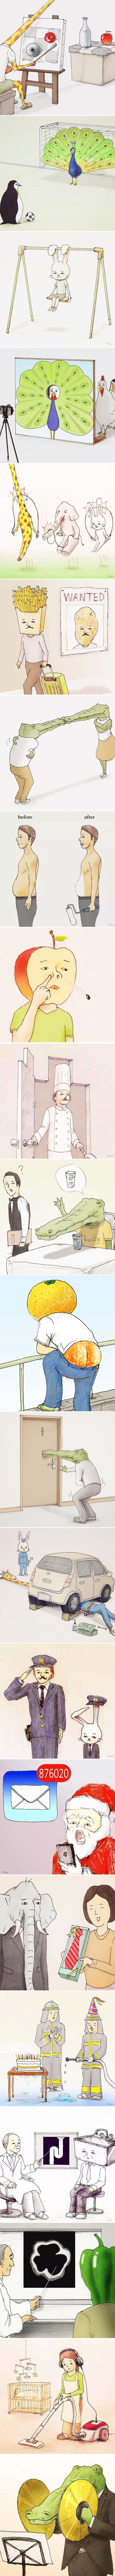 Japanski umjetnik sa zanimljivim smislom za humor crta ilustracije koje će vas sigurno nasmijati